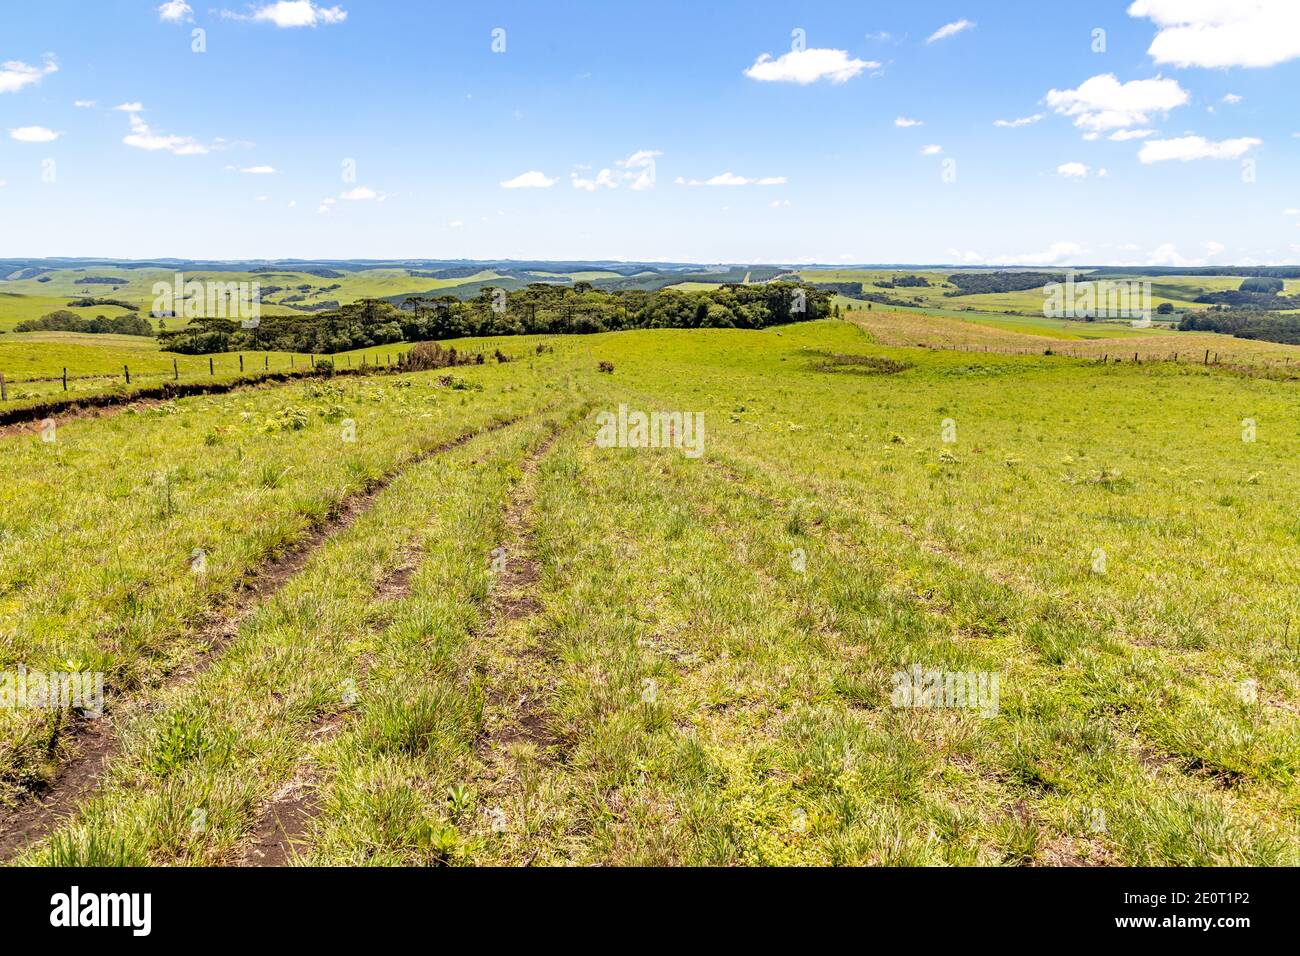 Farm field with Araucaria forest in Sao Francisco de Paula, Rio Grande do Sul, Brazil Stock Photo